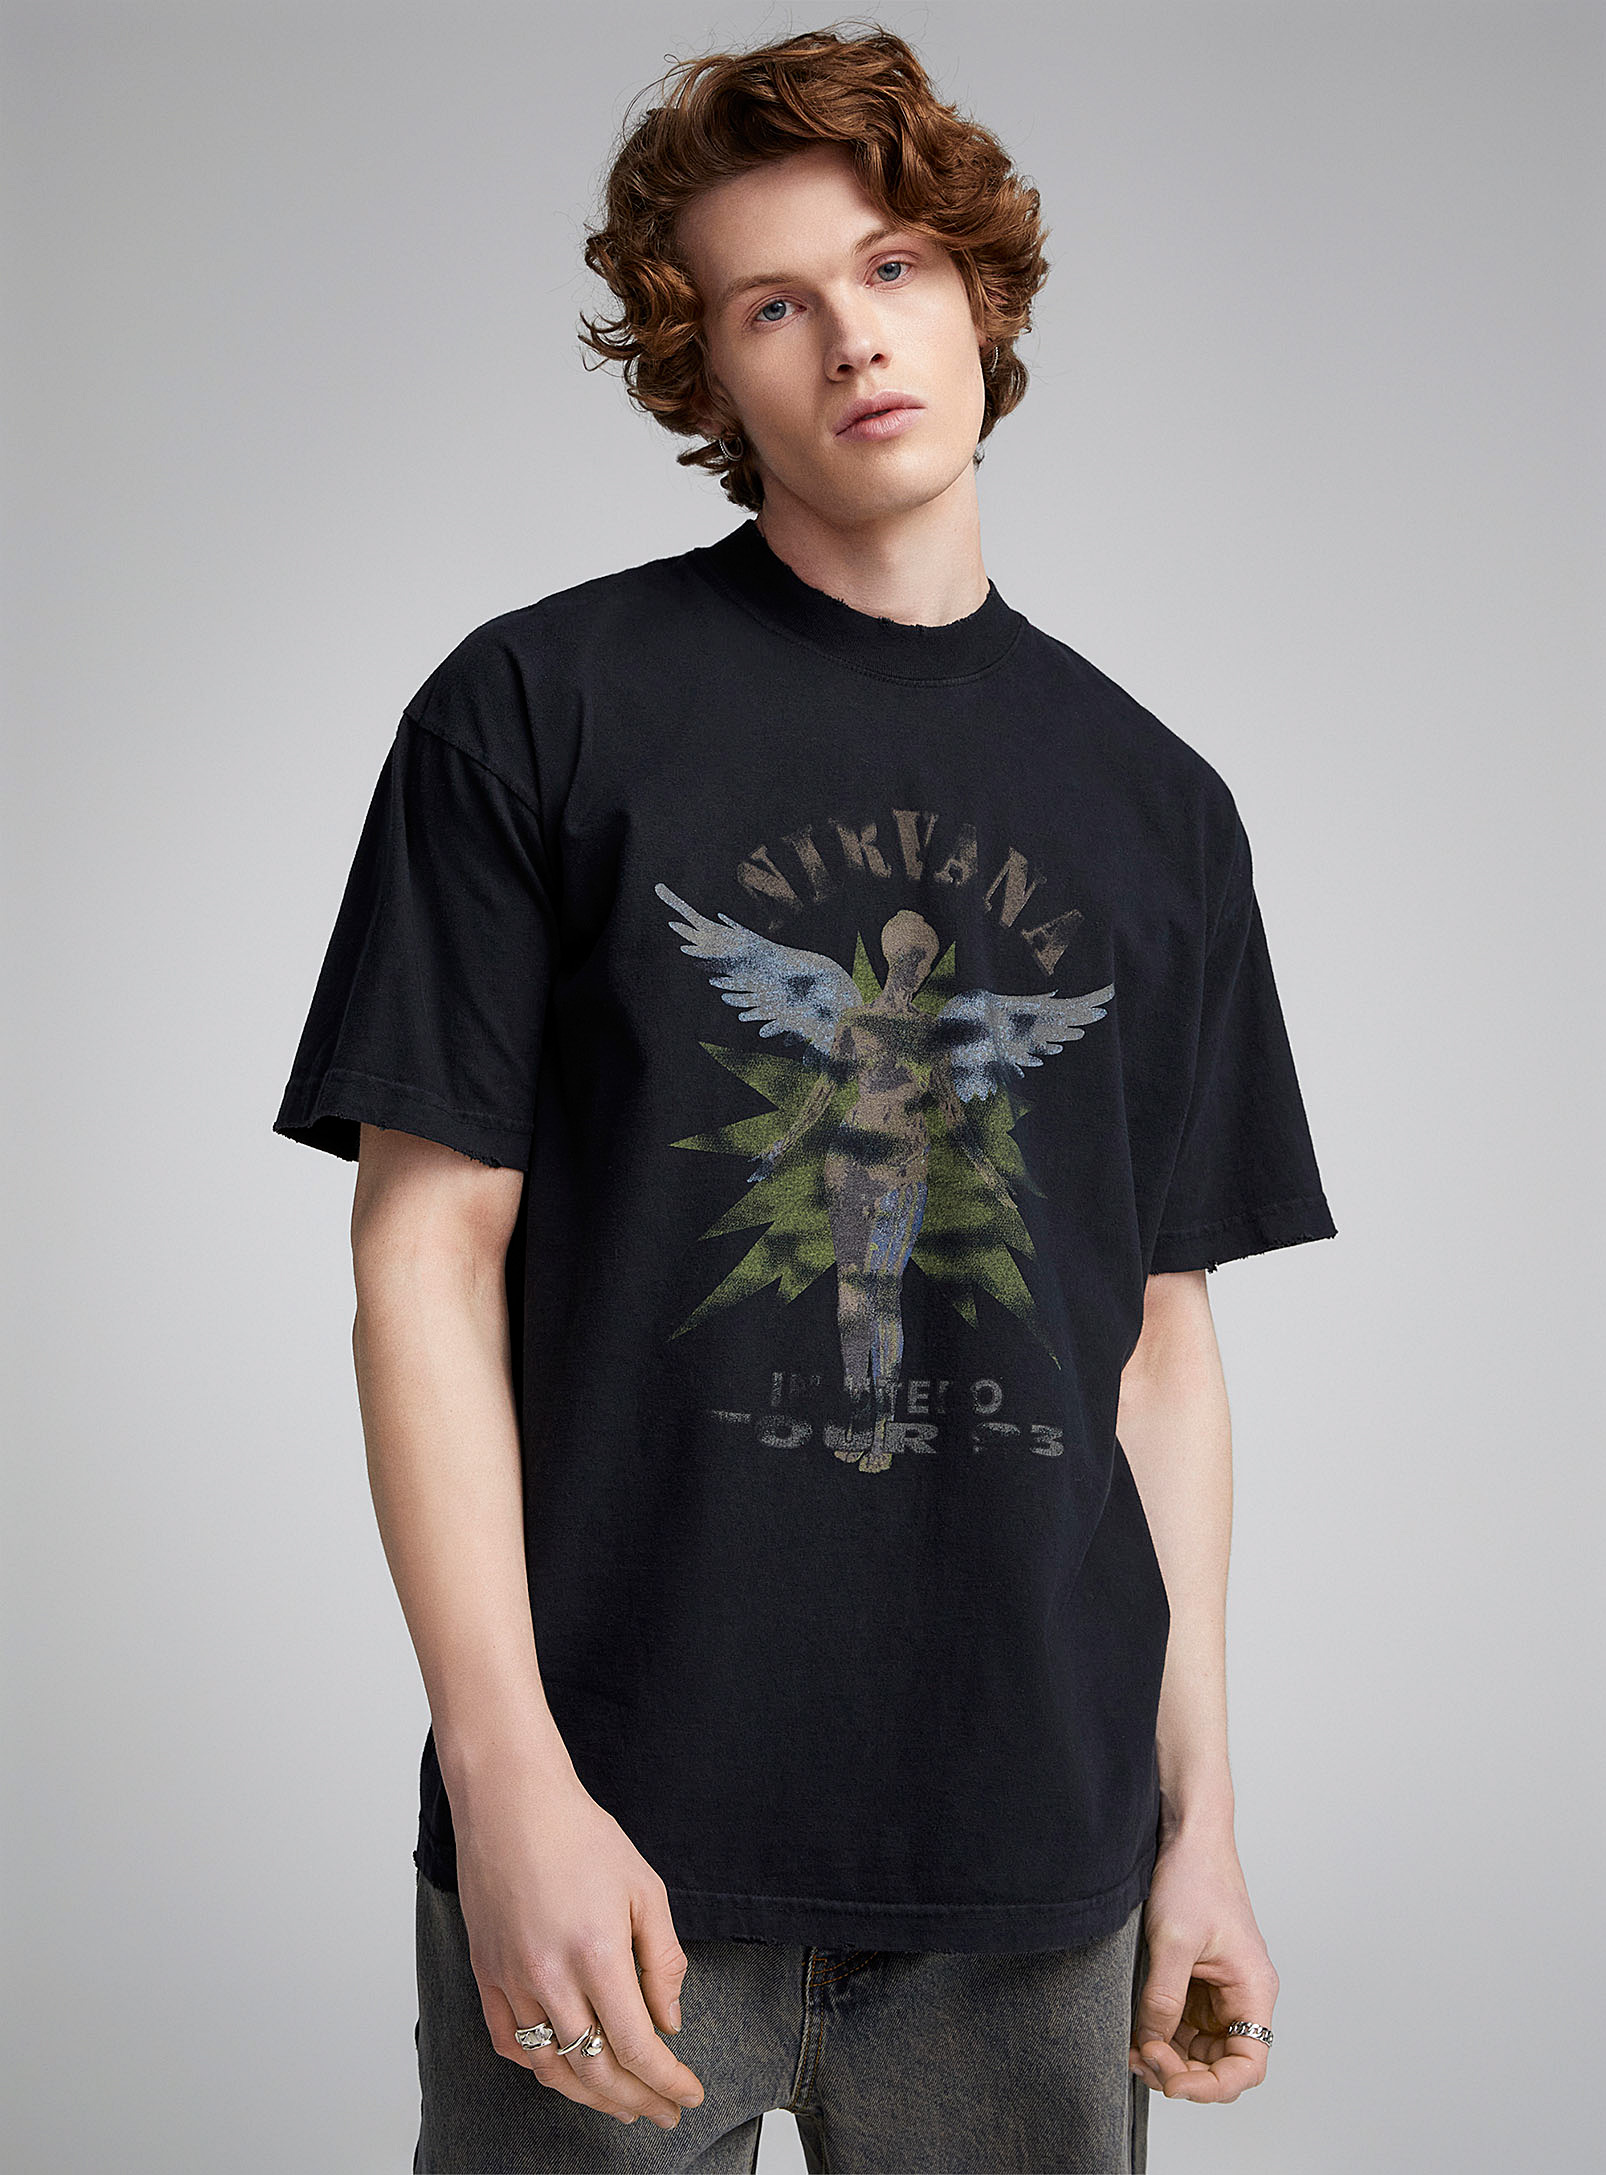 Djab Nirvana In Utero T-shirt In Black